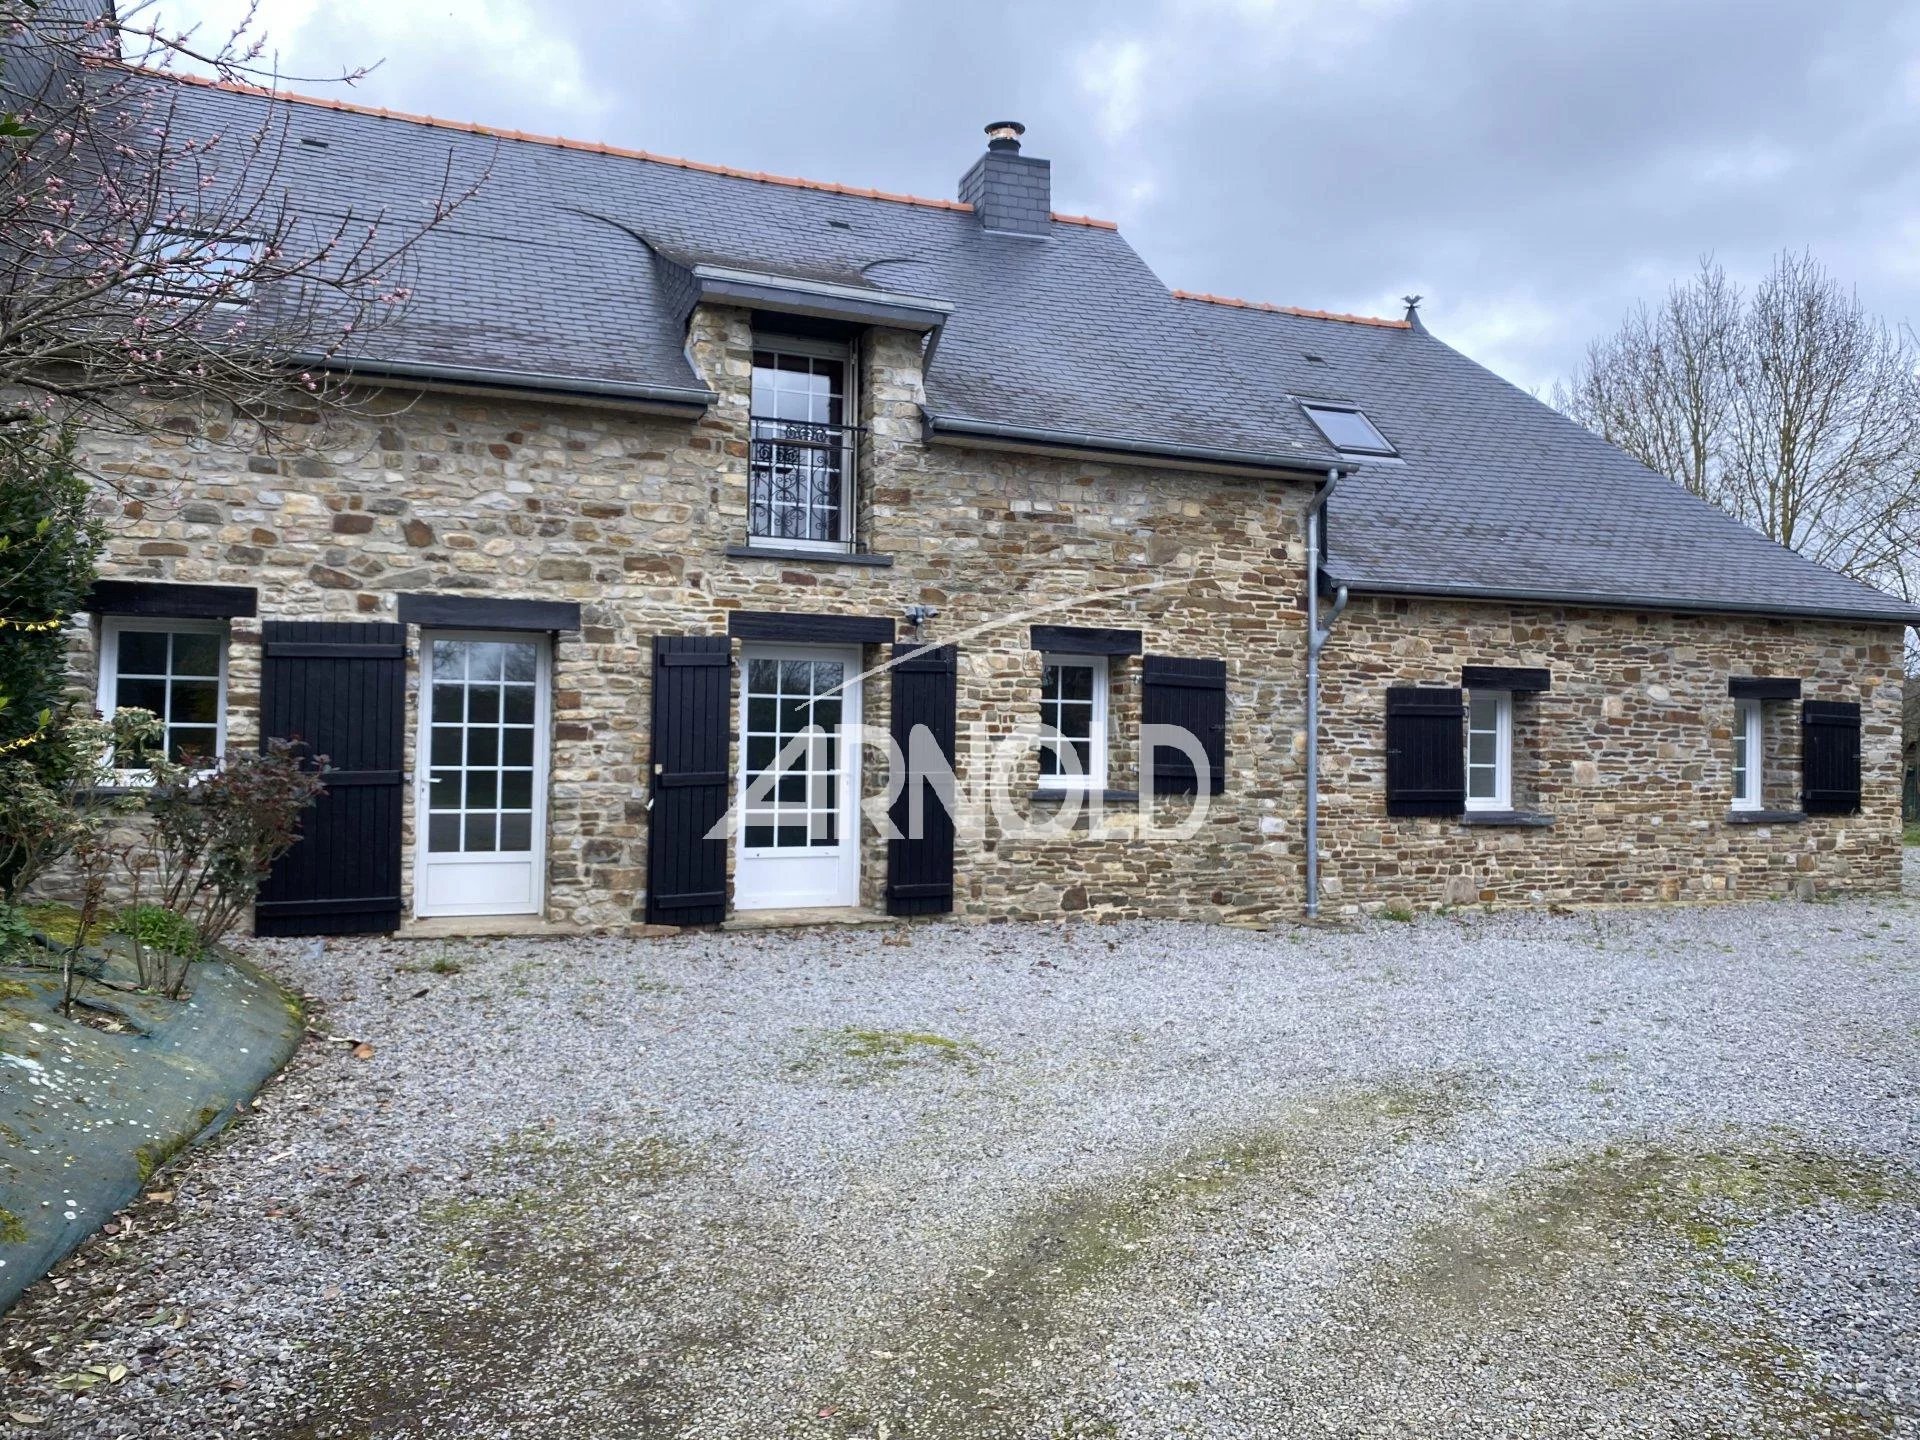 A vendre propriété composée de deux demeures à Bain de Bretagne